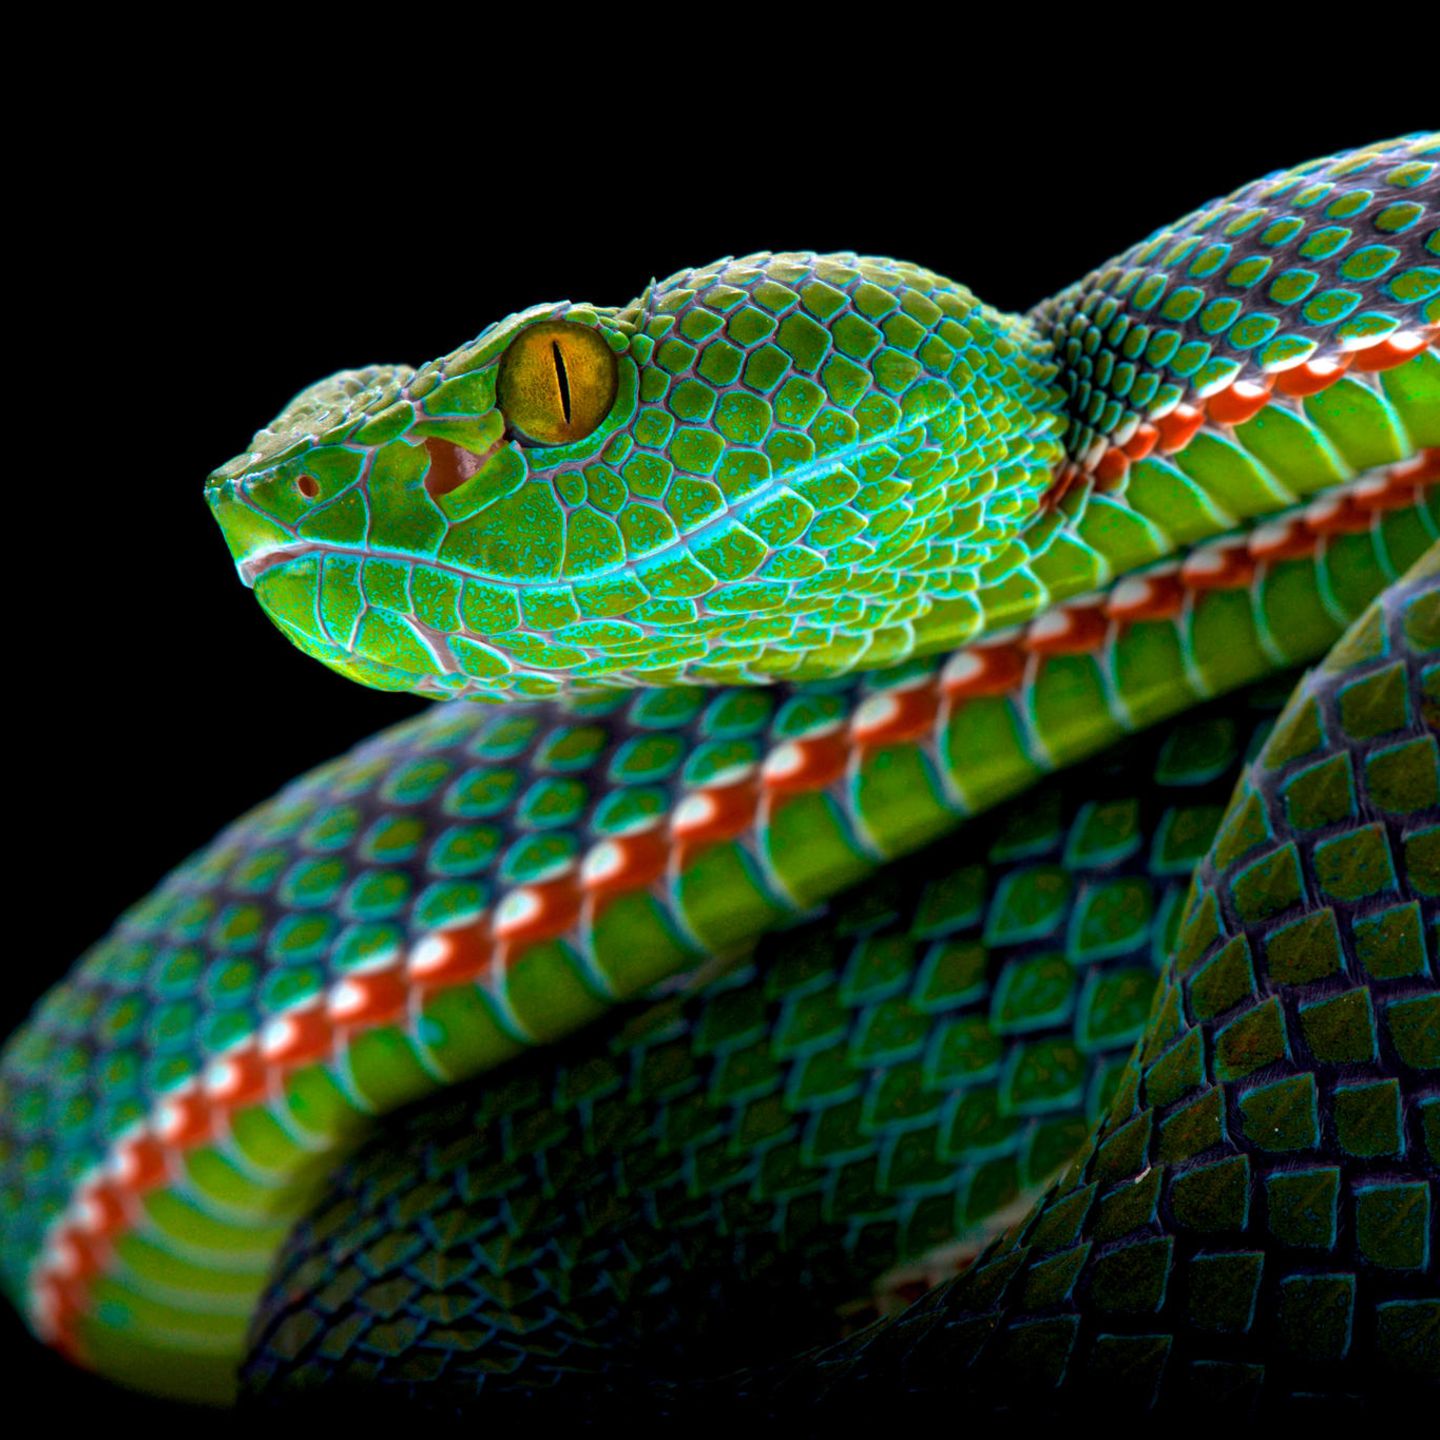 Weltweit gibt es schätzungsweise 4000 Schlangenarten – manche von ihnen sind atemberaubend schön gefärbt wie diese Viper, die in Thailand und Malaysia zu Hause ist